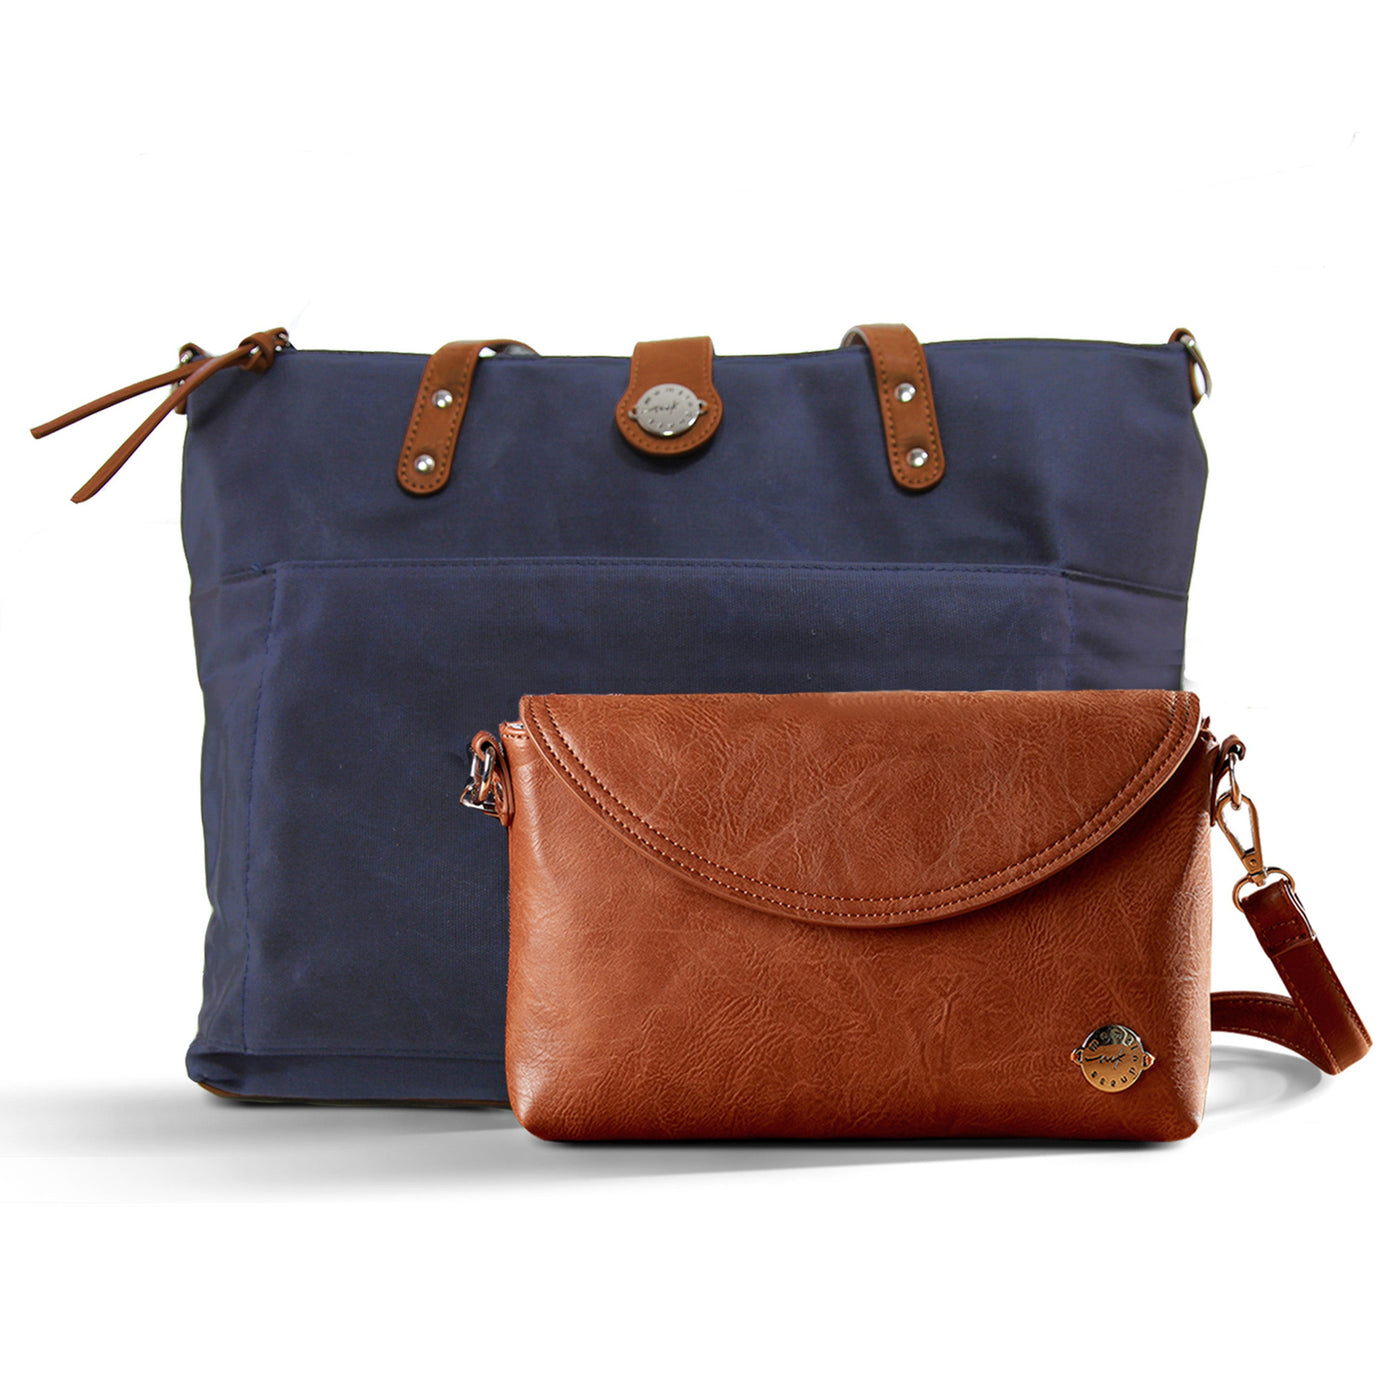 LUG CABLE CAR Crossbody Bag Indigo Navy Blue Purse Handbag Tote Strap NWOT  $91.12 - PicClick AU